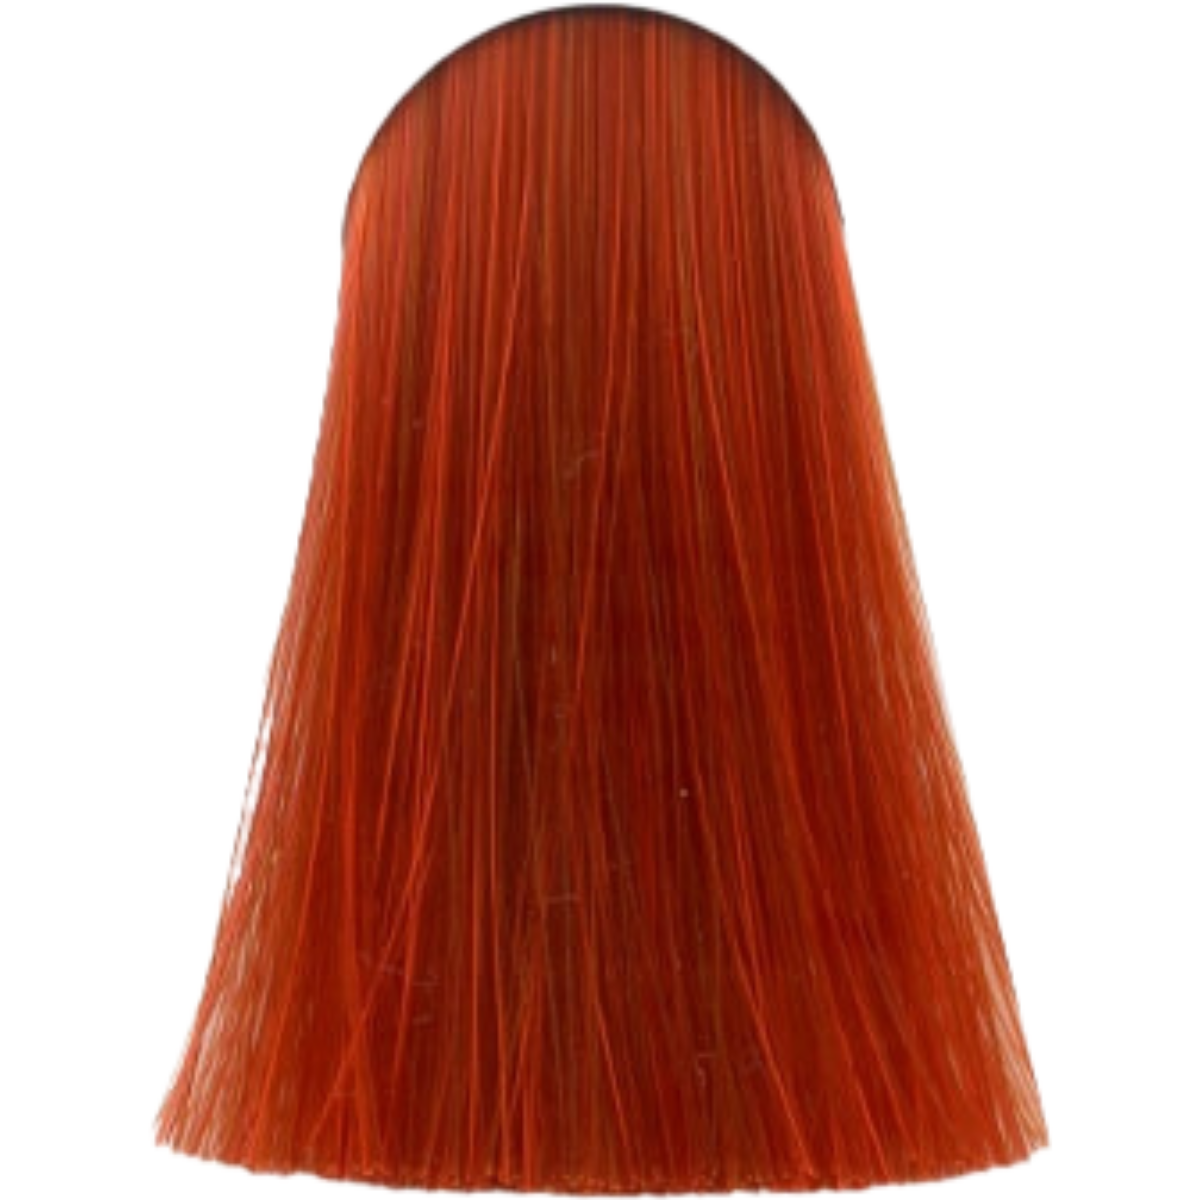 צבע שיער 9.44 VERY LIGHT BLONDE INTENSE COPPER אינדולה INDOLA צבע לשיער 60 גרם